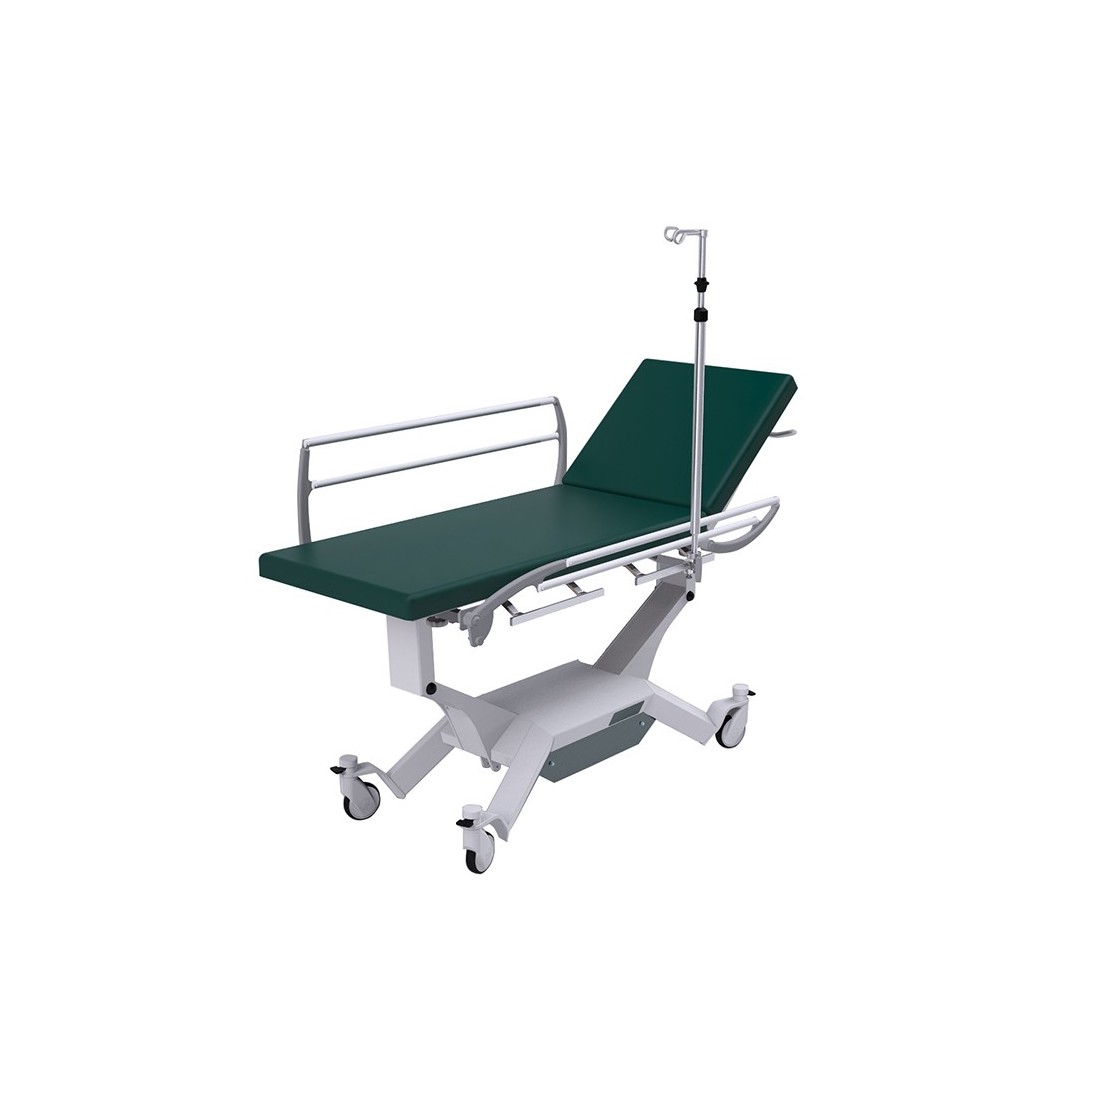 Table d'examen iQuest Hospital - roues - hauteur variable électrique - sans revêtement - 1 pc